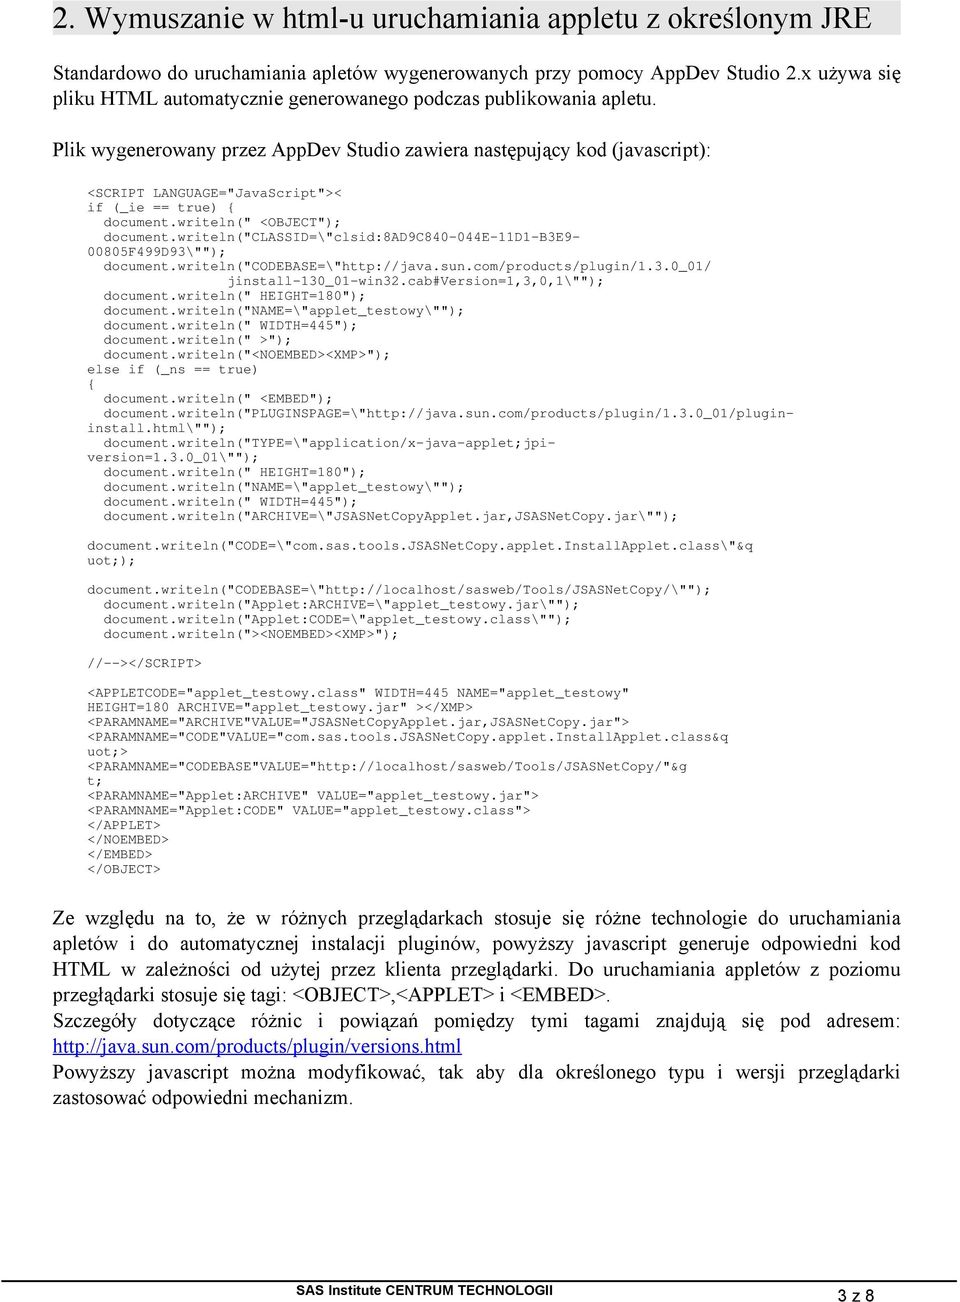 Plik wygenerowany przez AppDev Studio zawiera następujący kod (javascript): <SCRIPT LANGUAGE="JavaScript">< if (_ie == true) { document.writeln(" <OBJECT"); document.